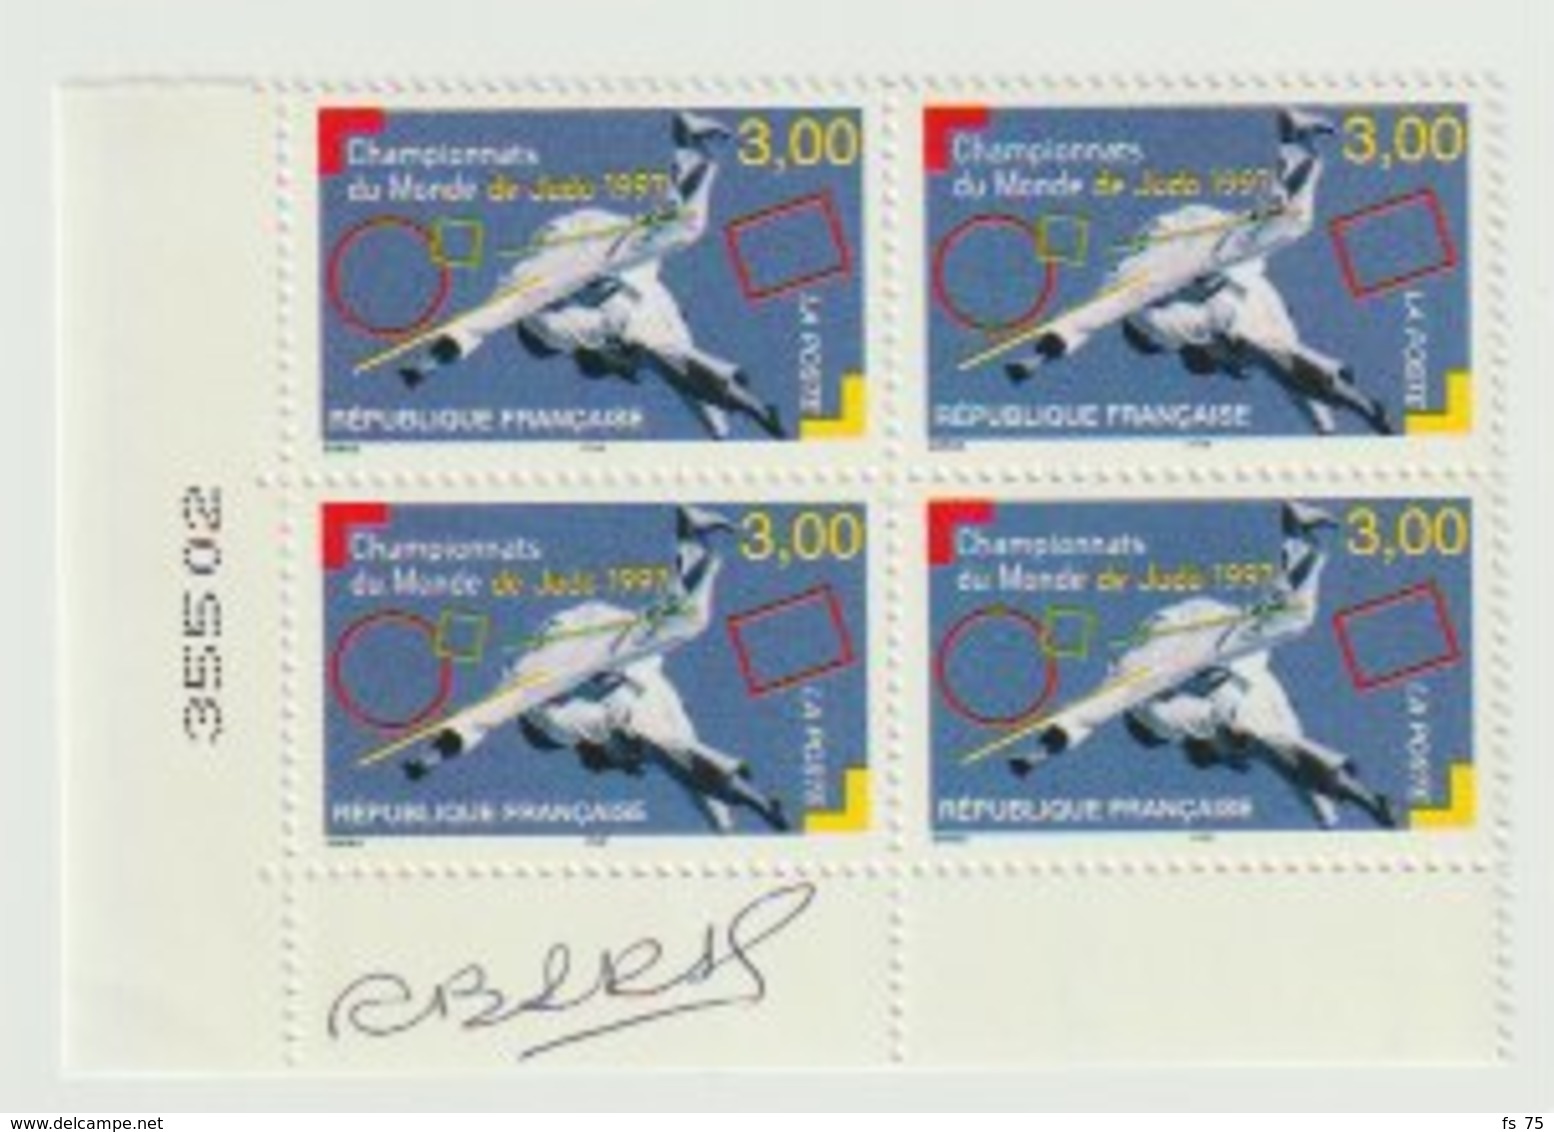 FRANCE - N°3111 - 3F - CHAMPIONNATS DU MONDE DE JUDO 1997 - BLOC DE 4 - SIGNE  S. BARAS - Unused Stamps